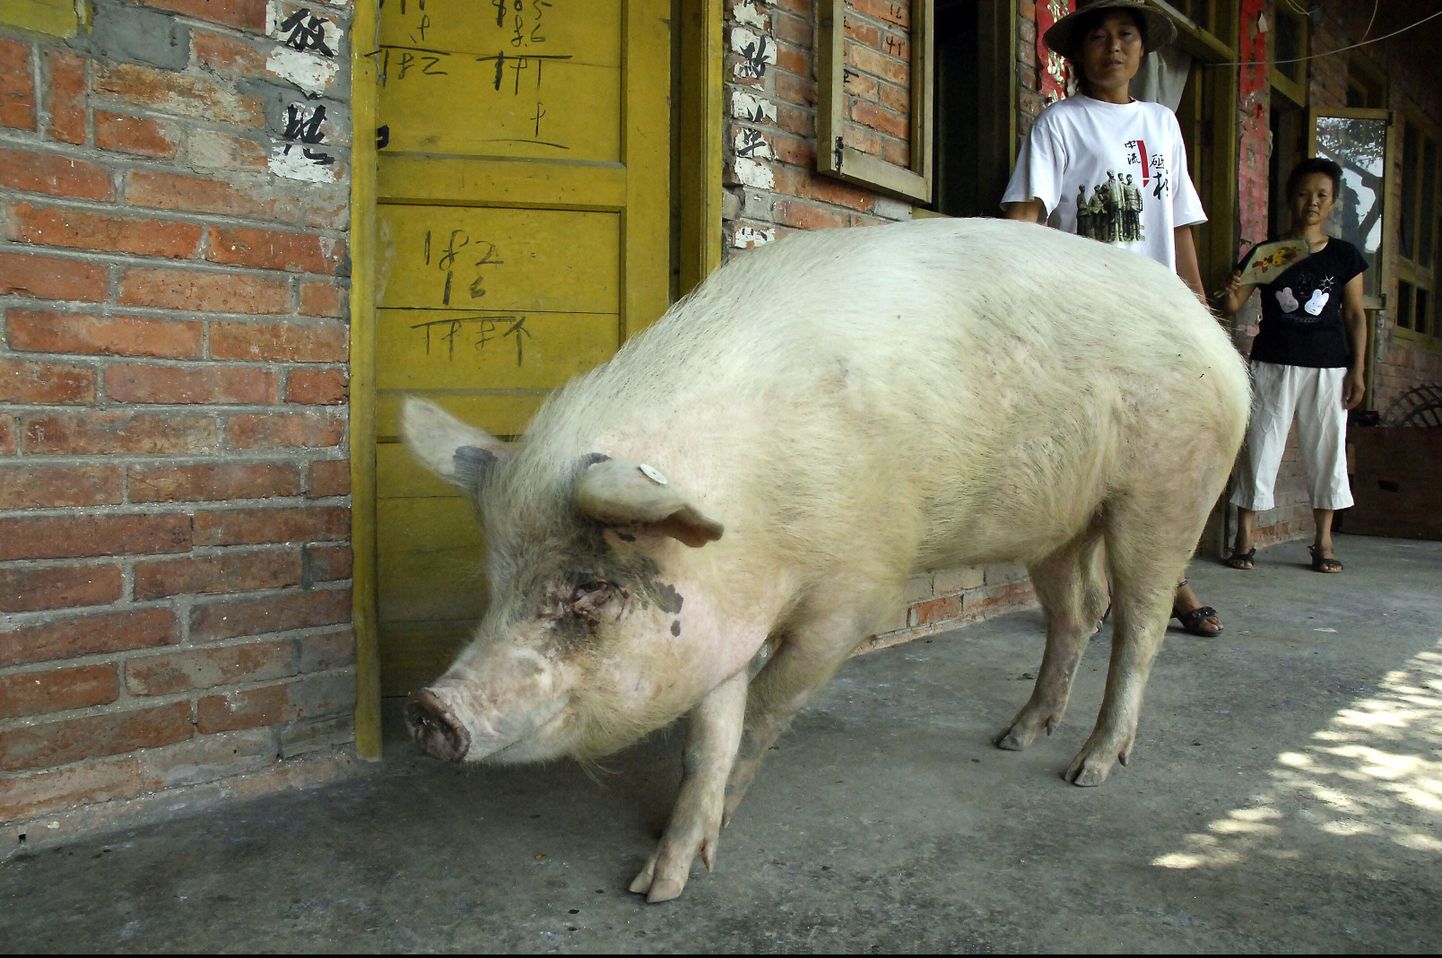 Hiina kuulus siga sai kuninglikud matused